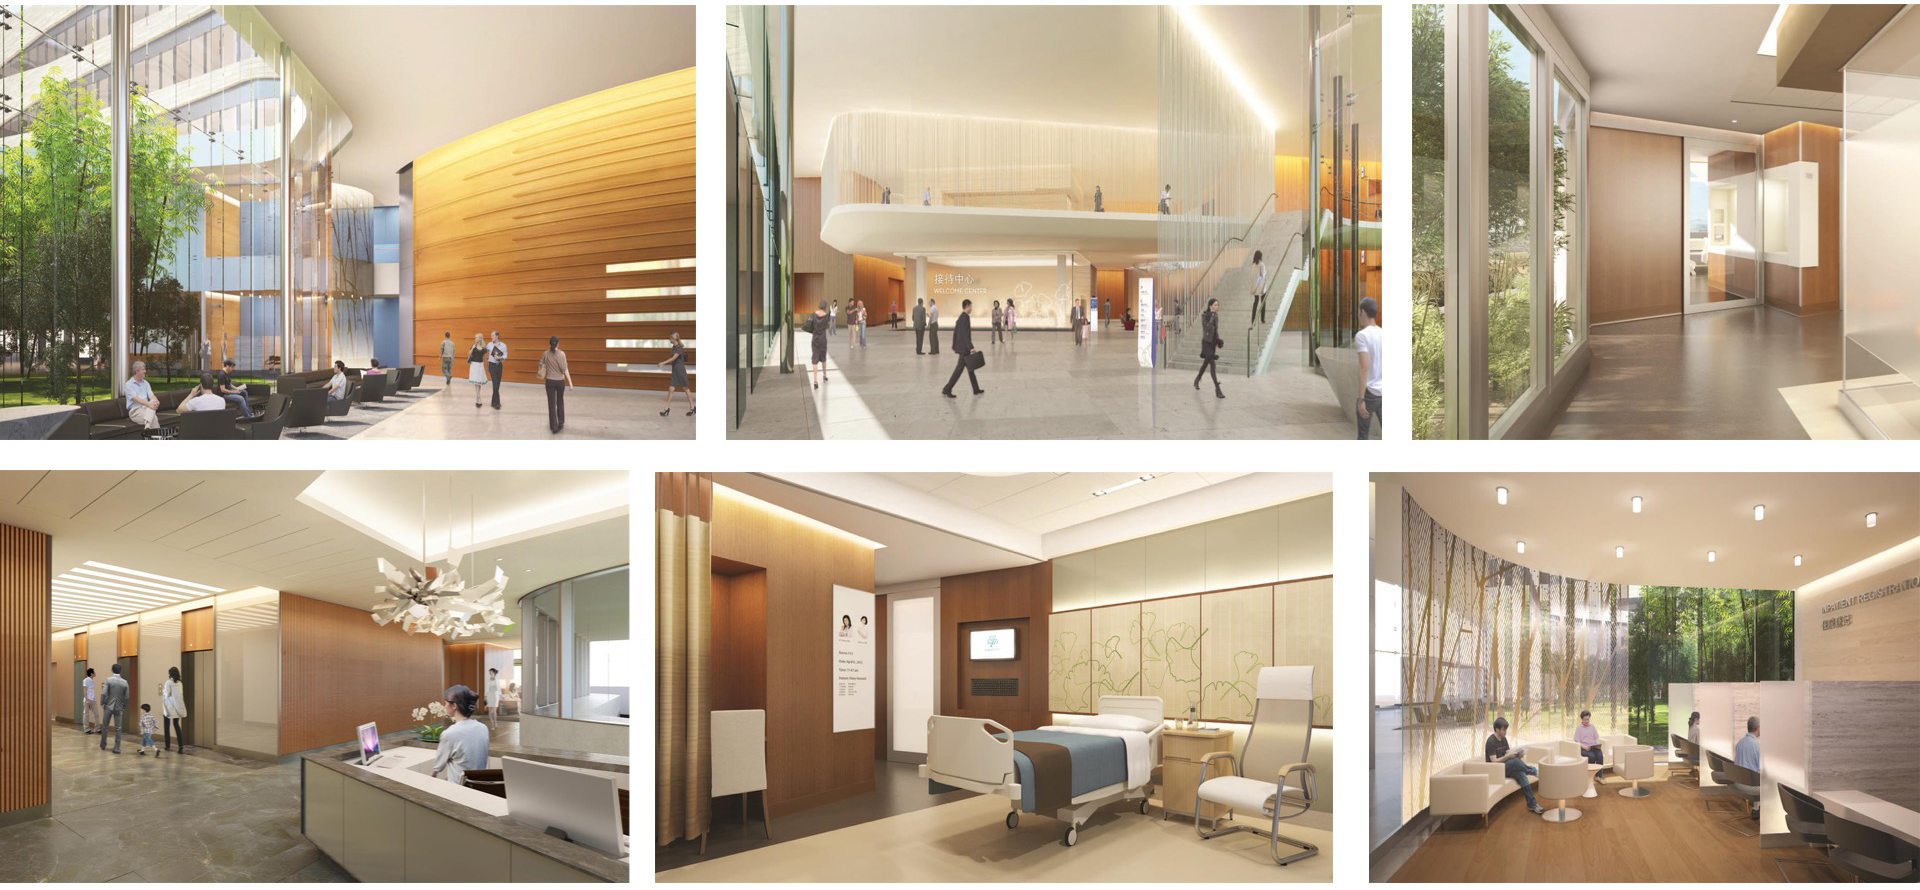 上海嘉会国际医院 医疗养老 案例中心 上海康业建筑设计有限公